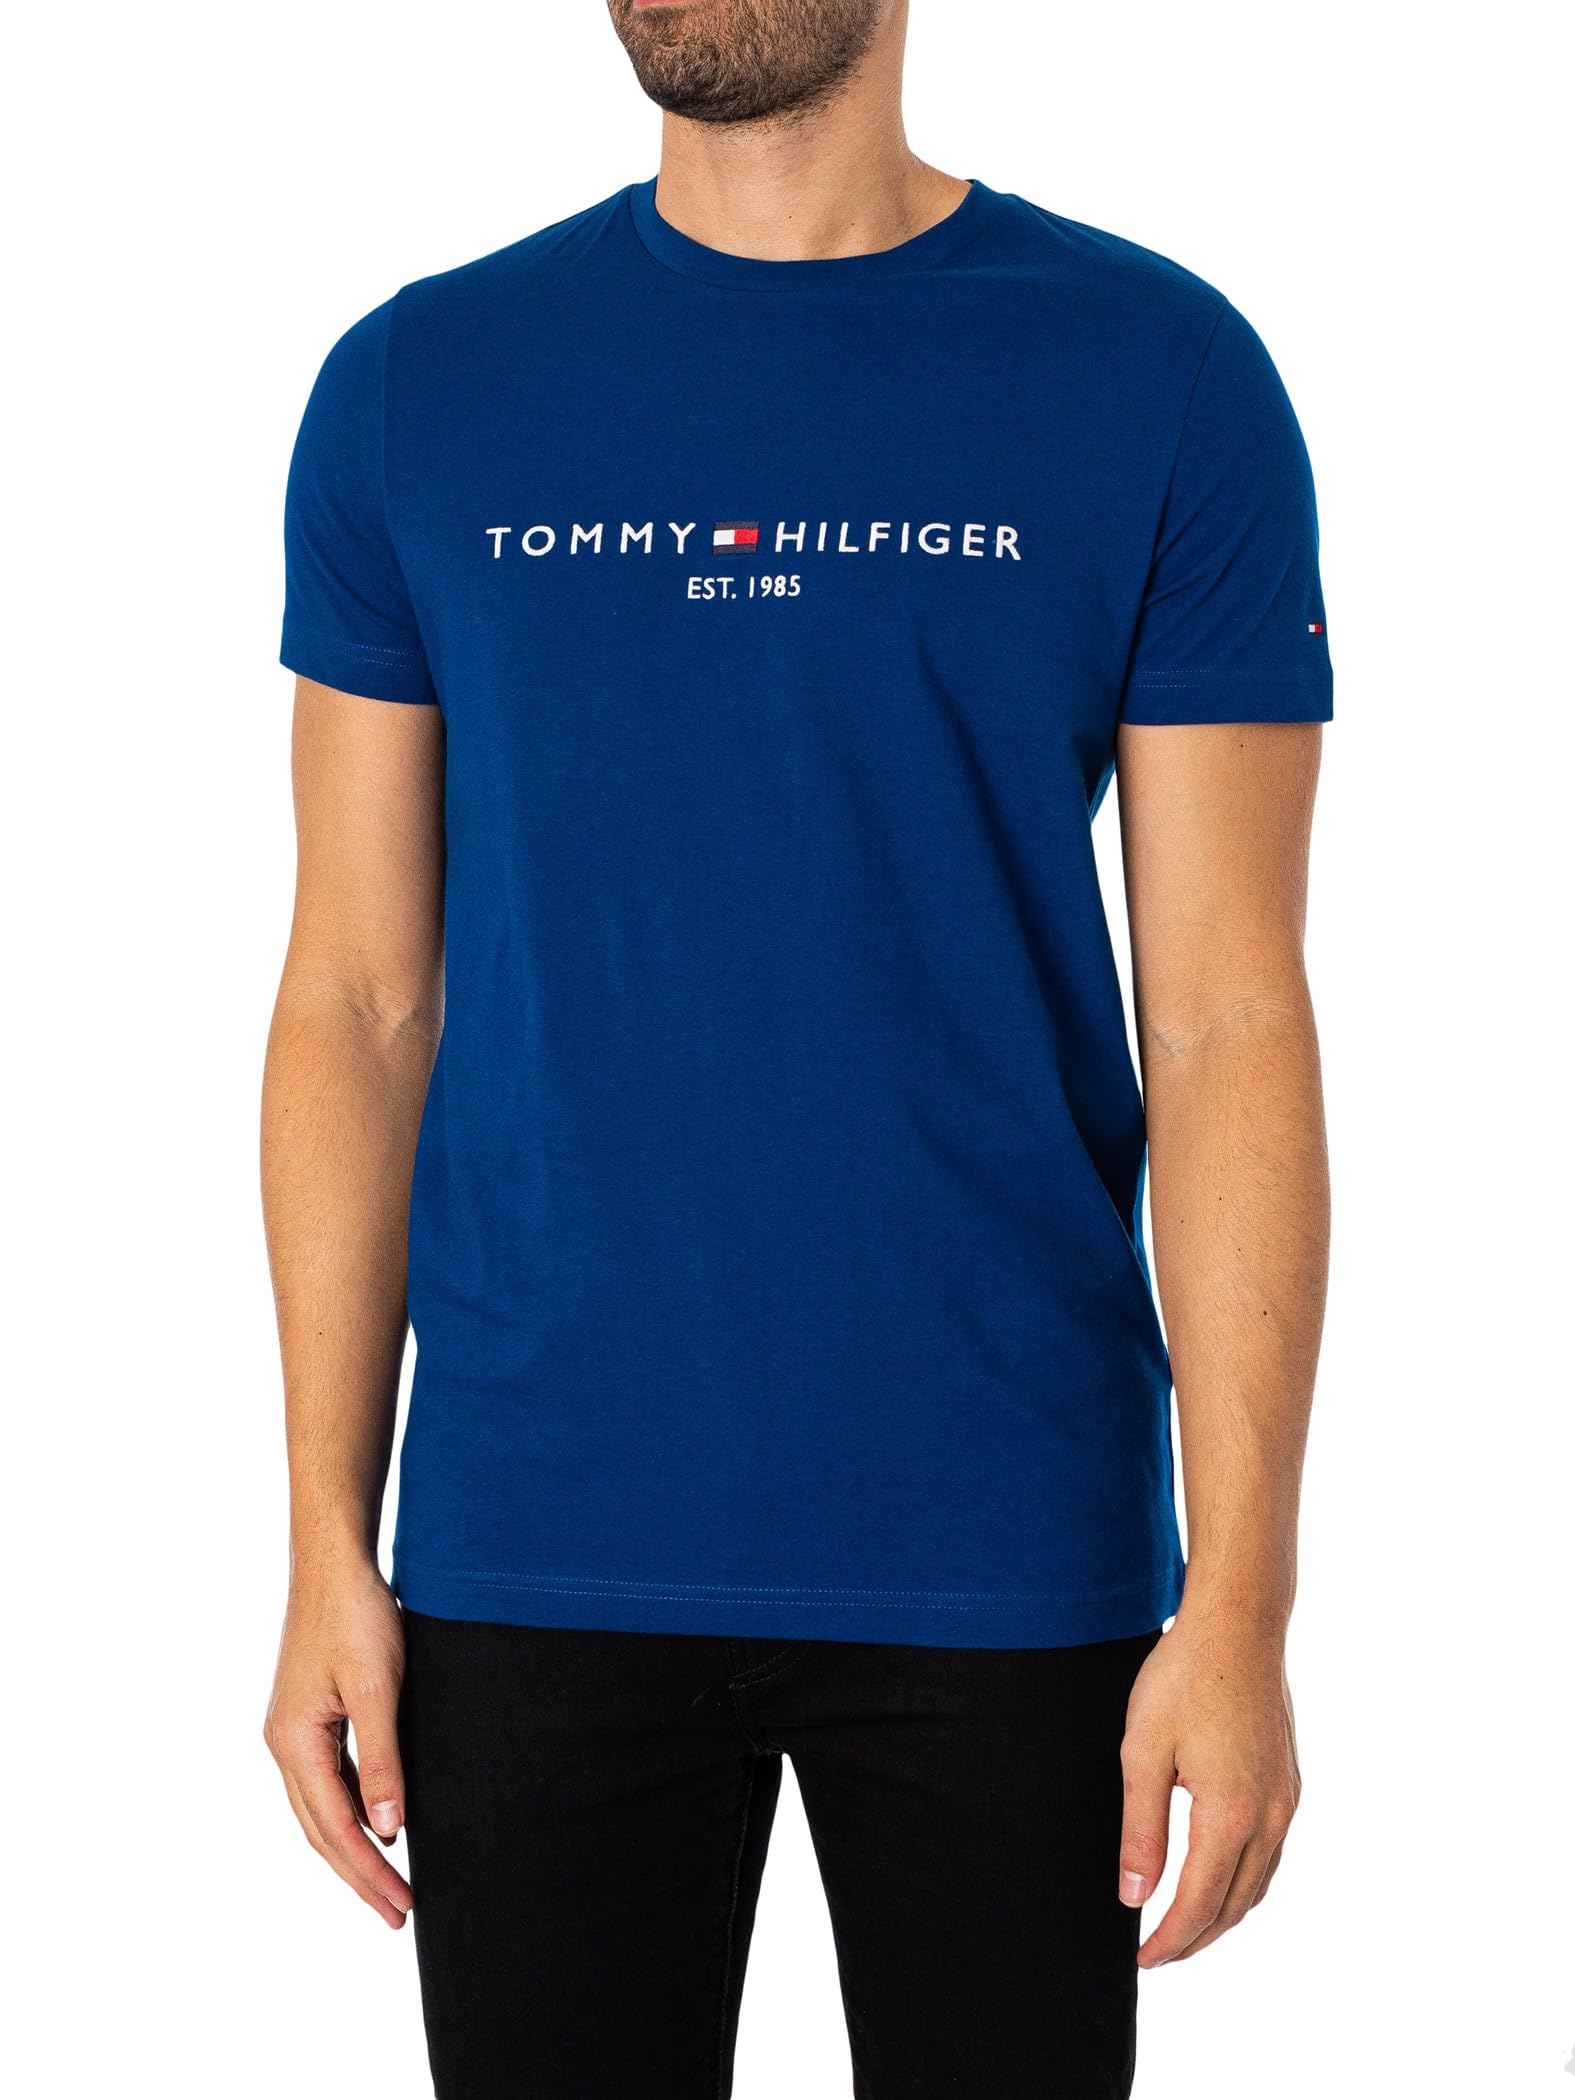 vente chaude Tommy Hilfiger Homme T-Shirt Manches Courtes Tommy Logo encolure Ronde sgewSjkOg véritable contre